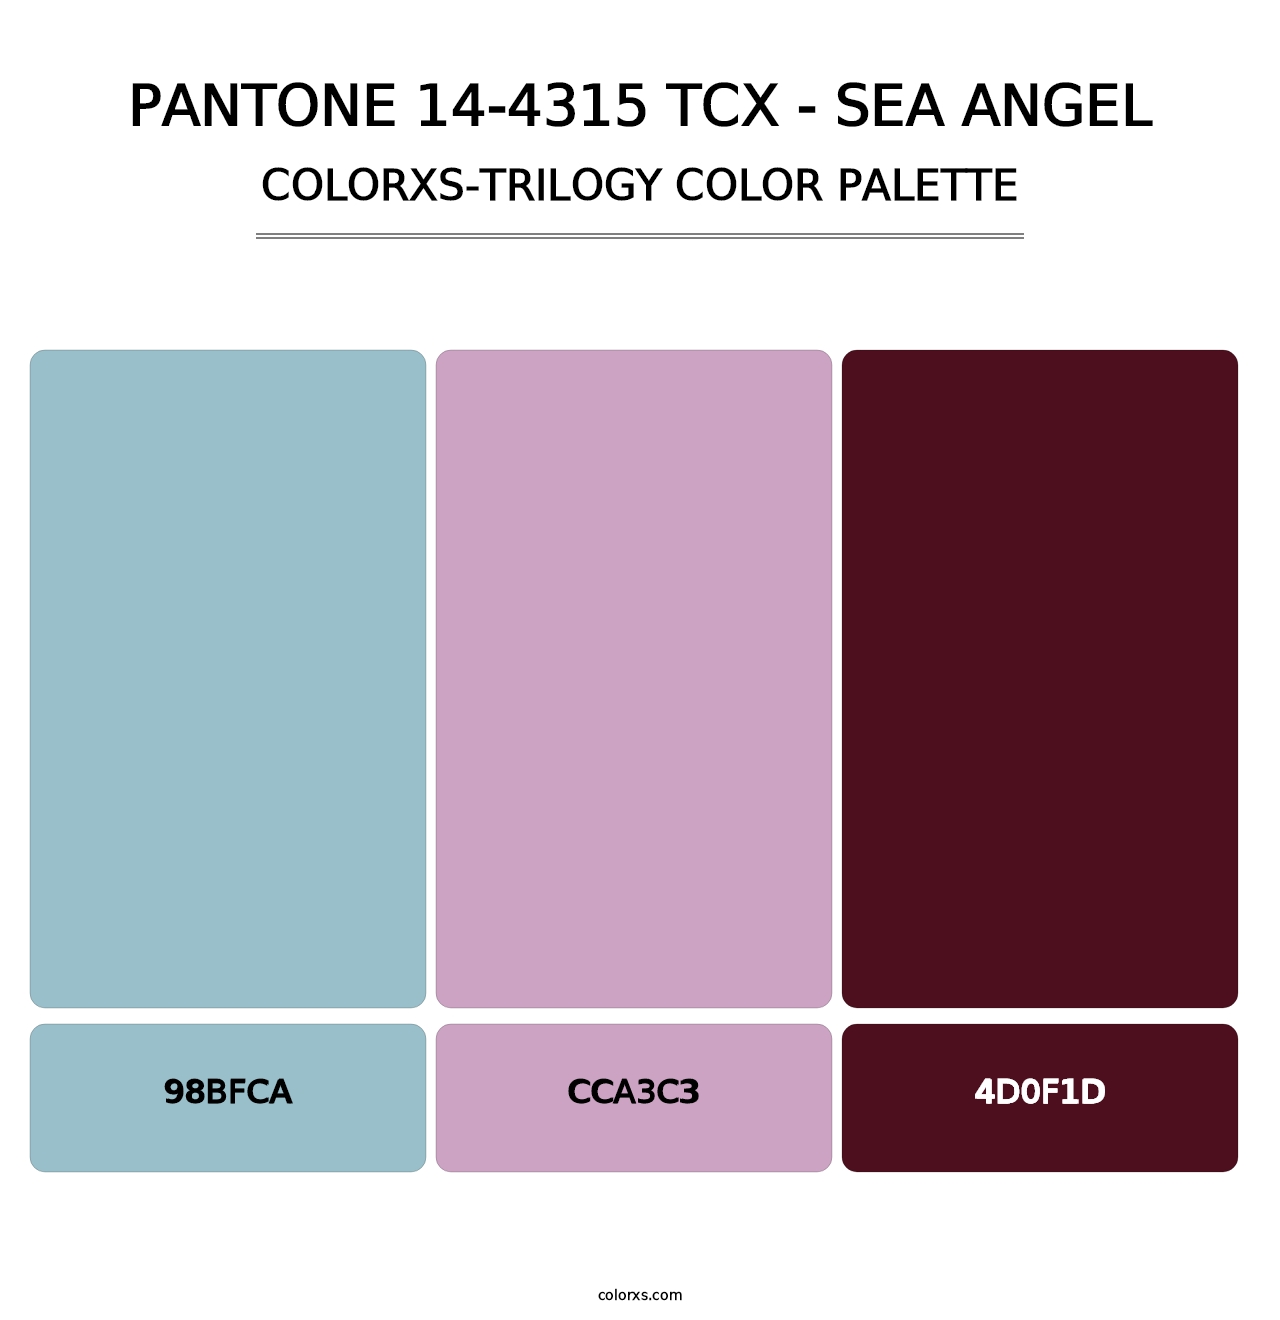 PANTONE 14-4315 TCX - Sea Angel - Colorxs Trilogy Palette